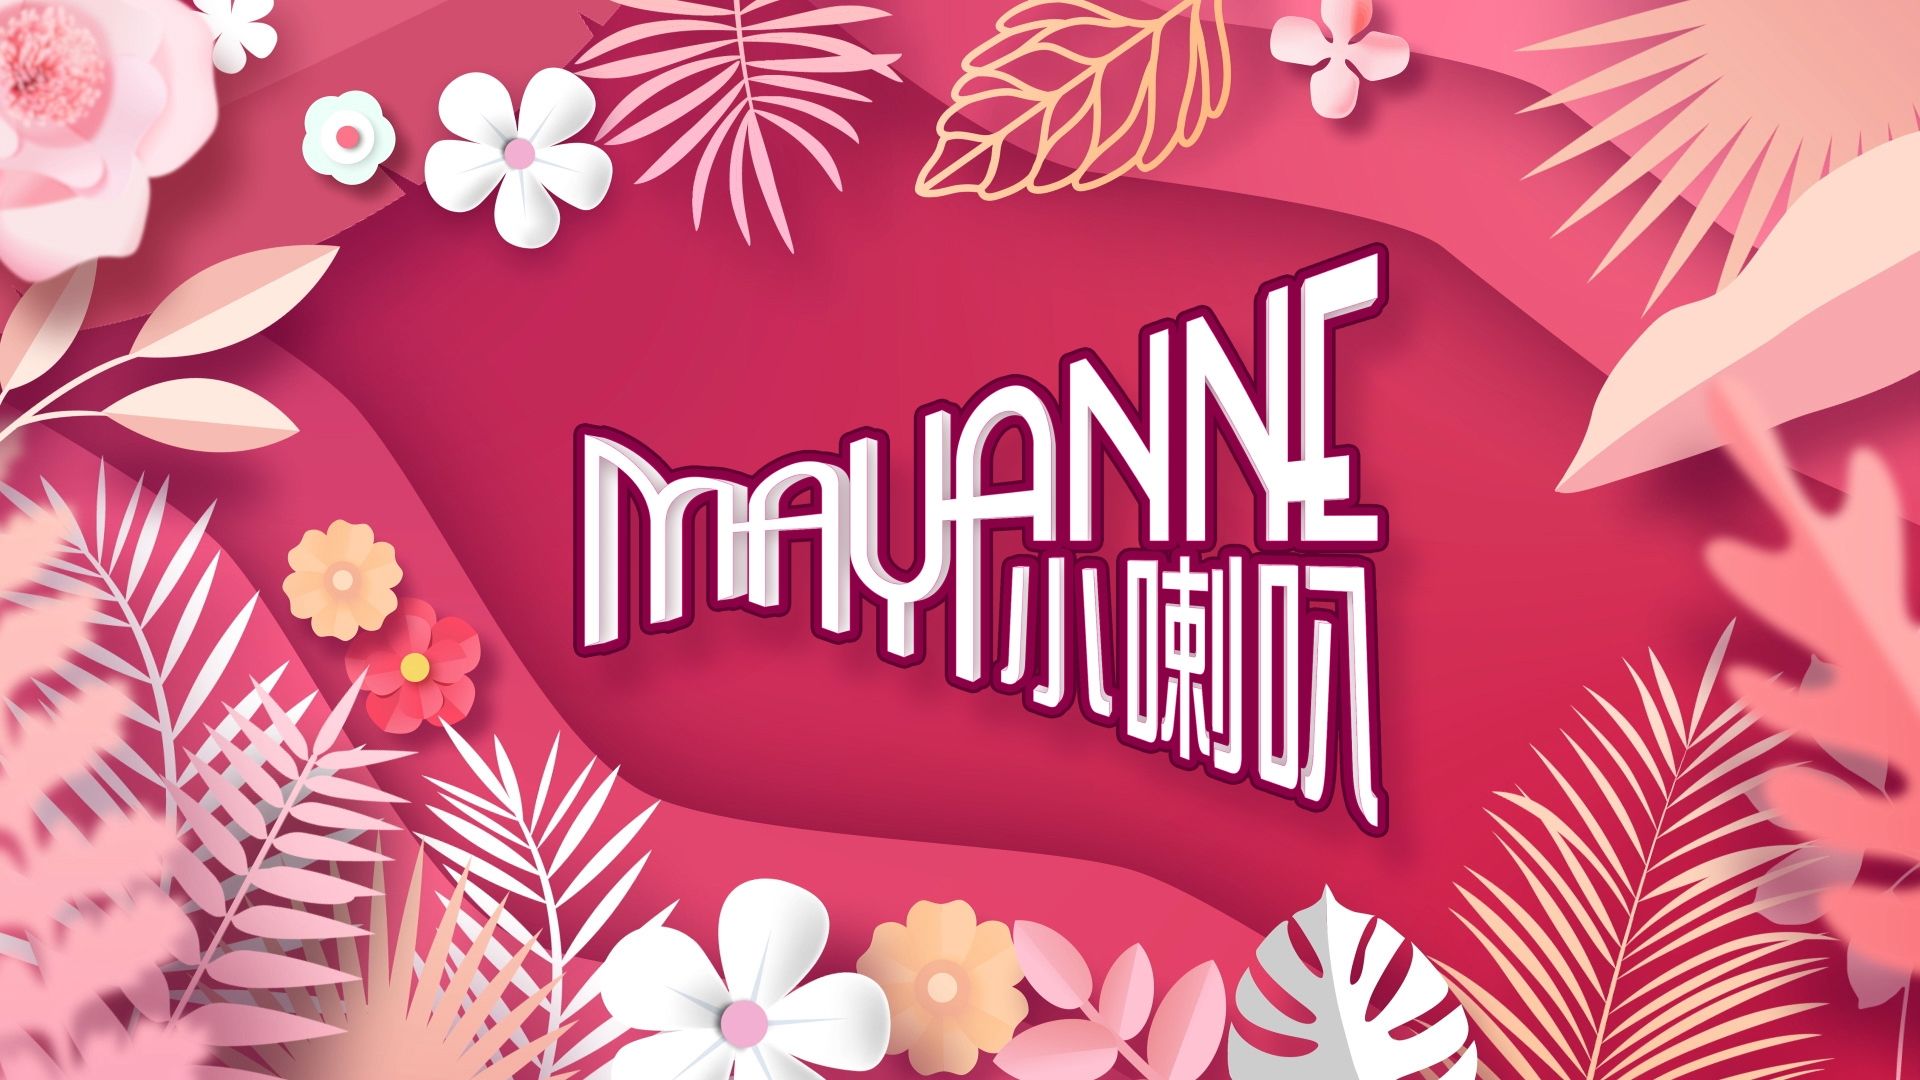 Mayanne小喇叭-Mayanne Blah Blah Blah